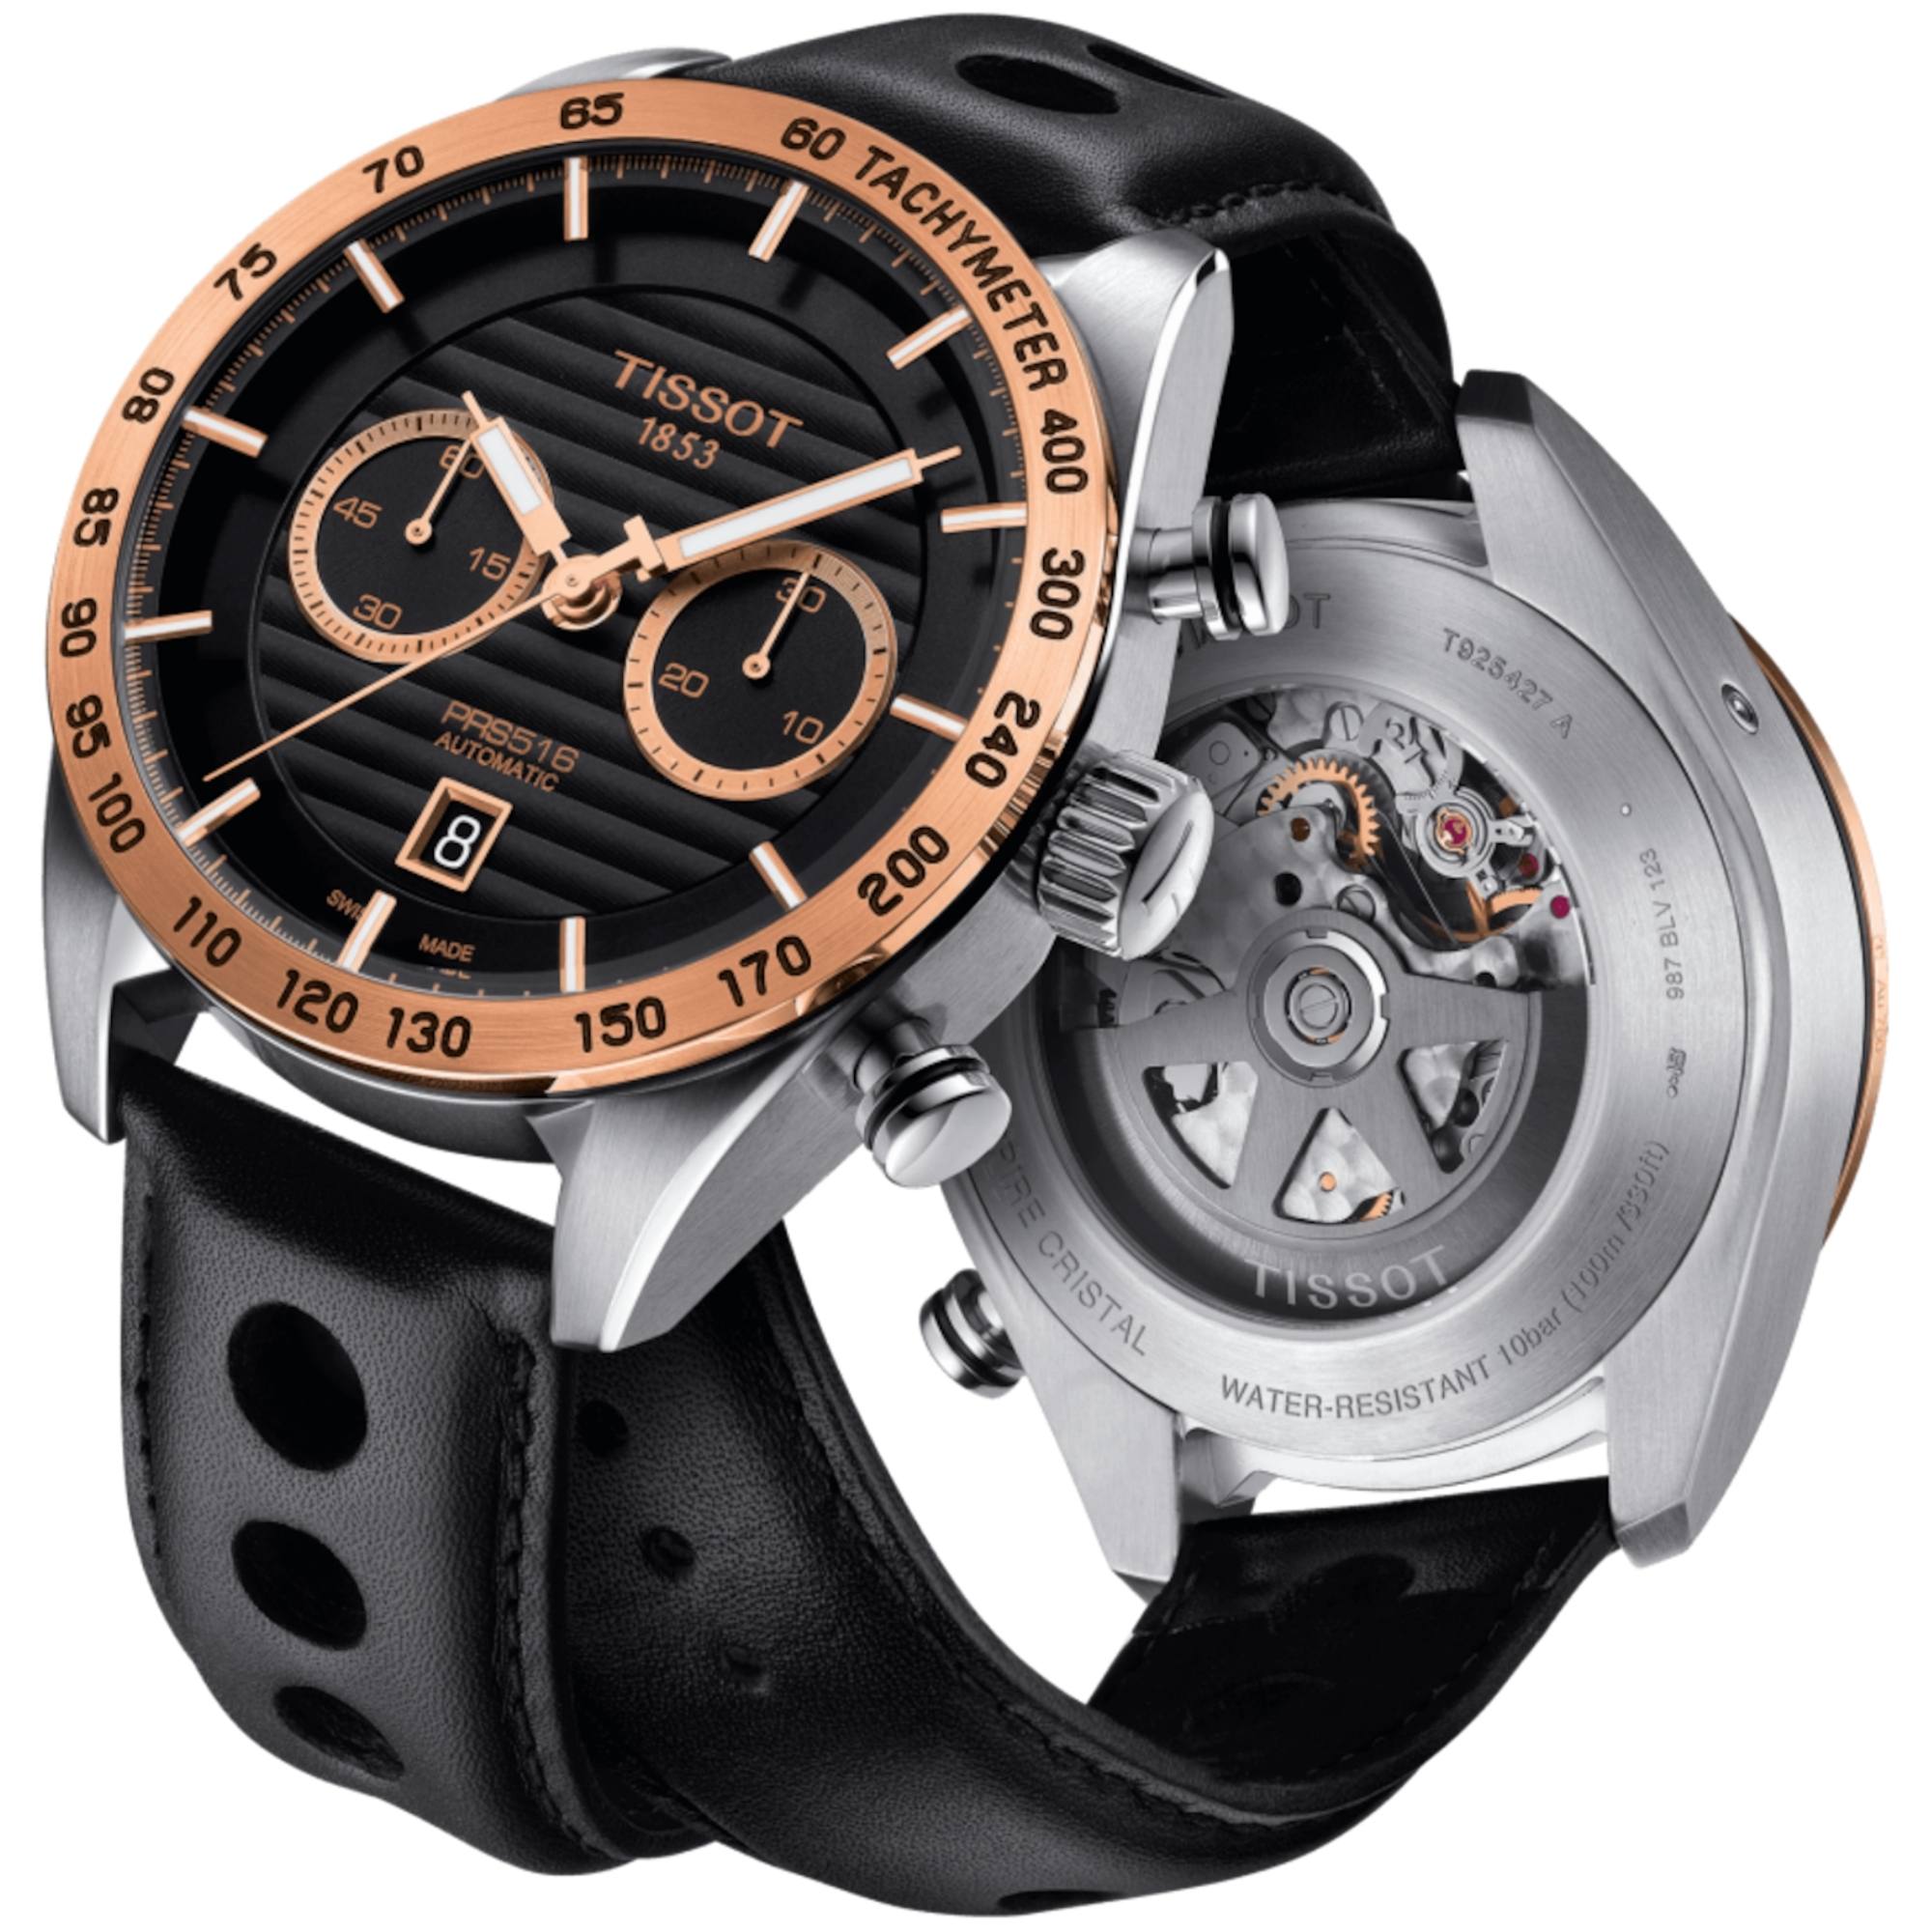 Relógio Tissot PRS 516 Automático Ouro 18K Valjoux T925.427.46.051.01